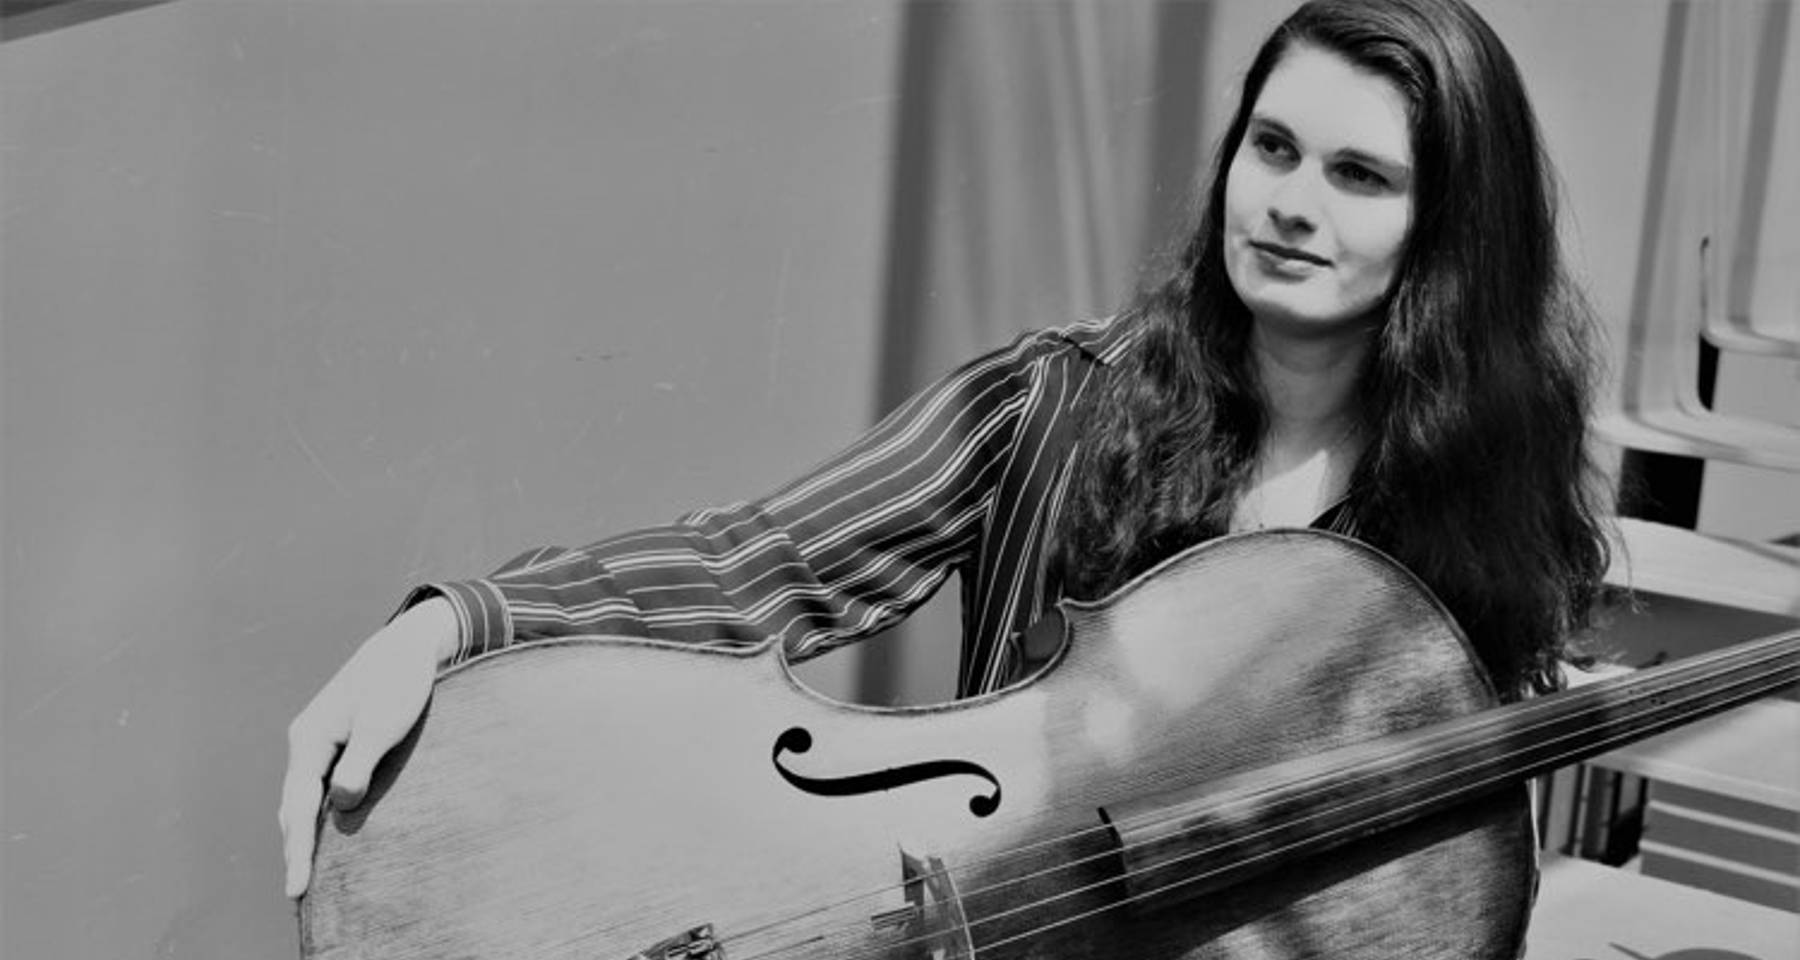 A Solo Cello-bration